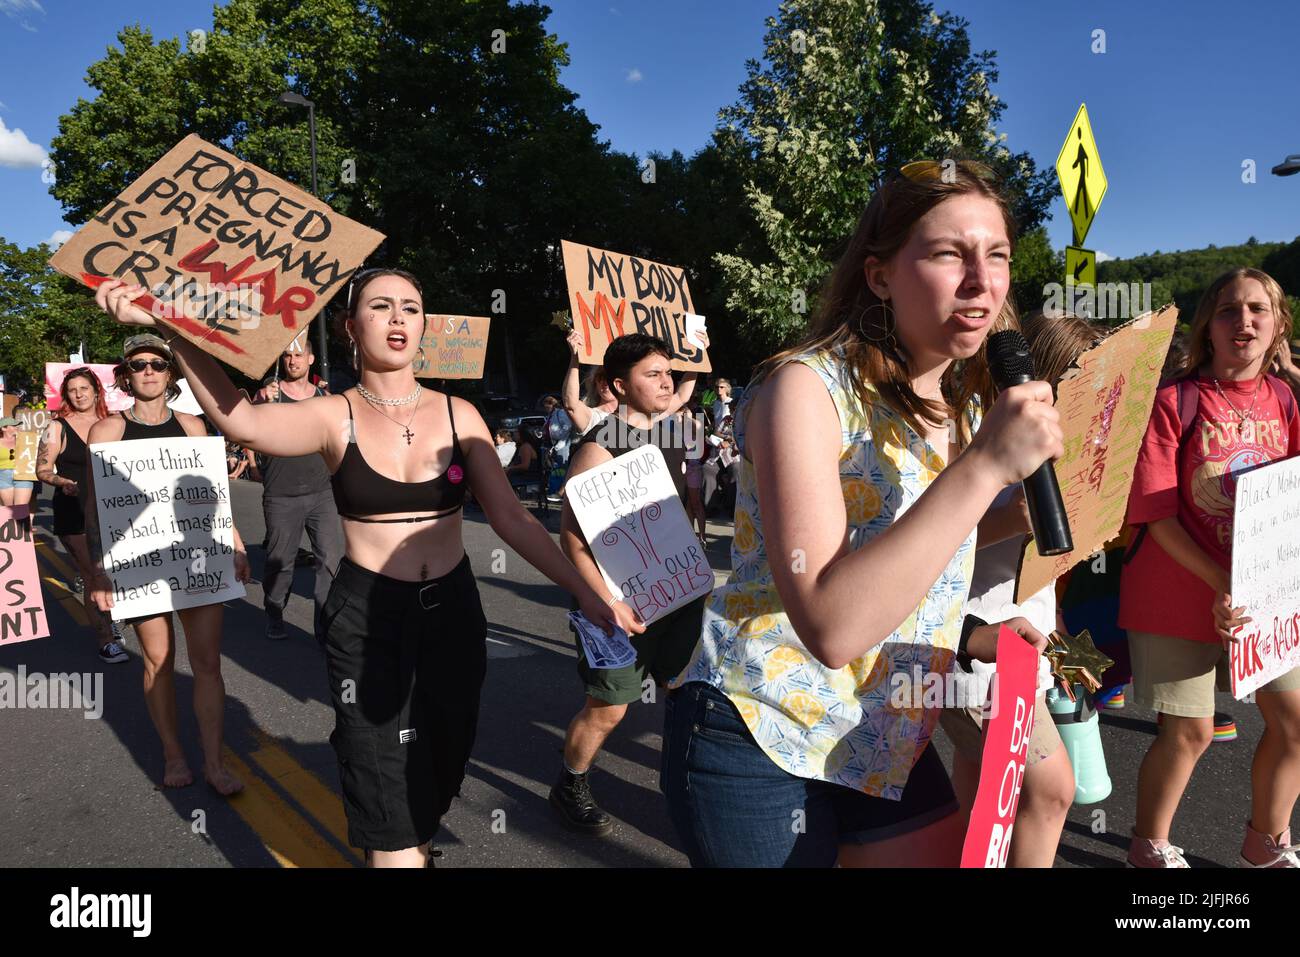 Frauen protestieren gegen das Urteil des Obersten Gerichtshofs der USA, mit dem Roe V. Wade in einer Parade am 4.. Juli in Montpelier, Vermont, USA (3. Juli) umgestartet wurde. Stockfoto